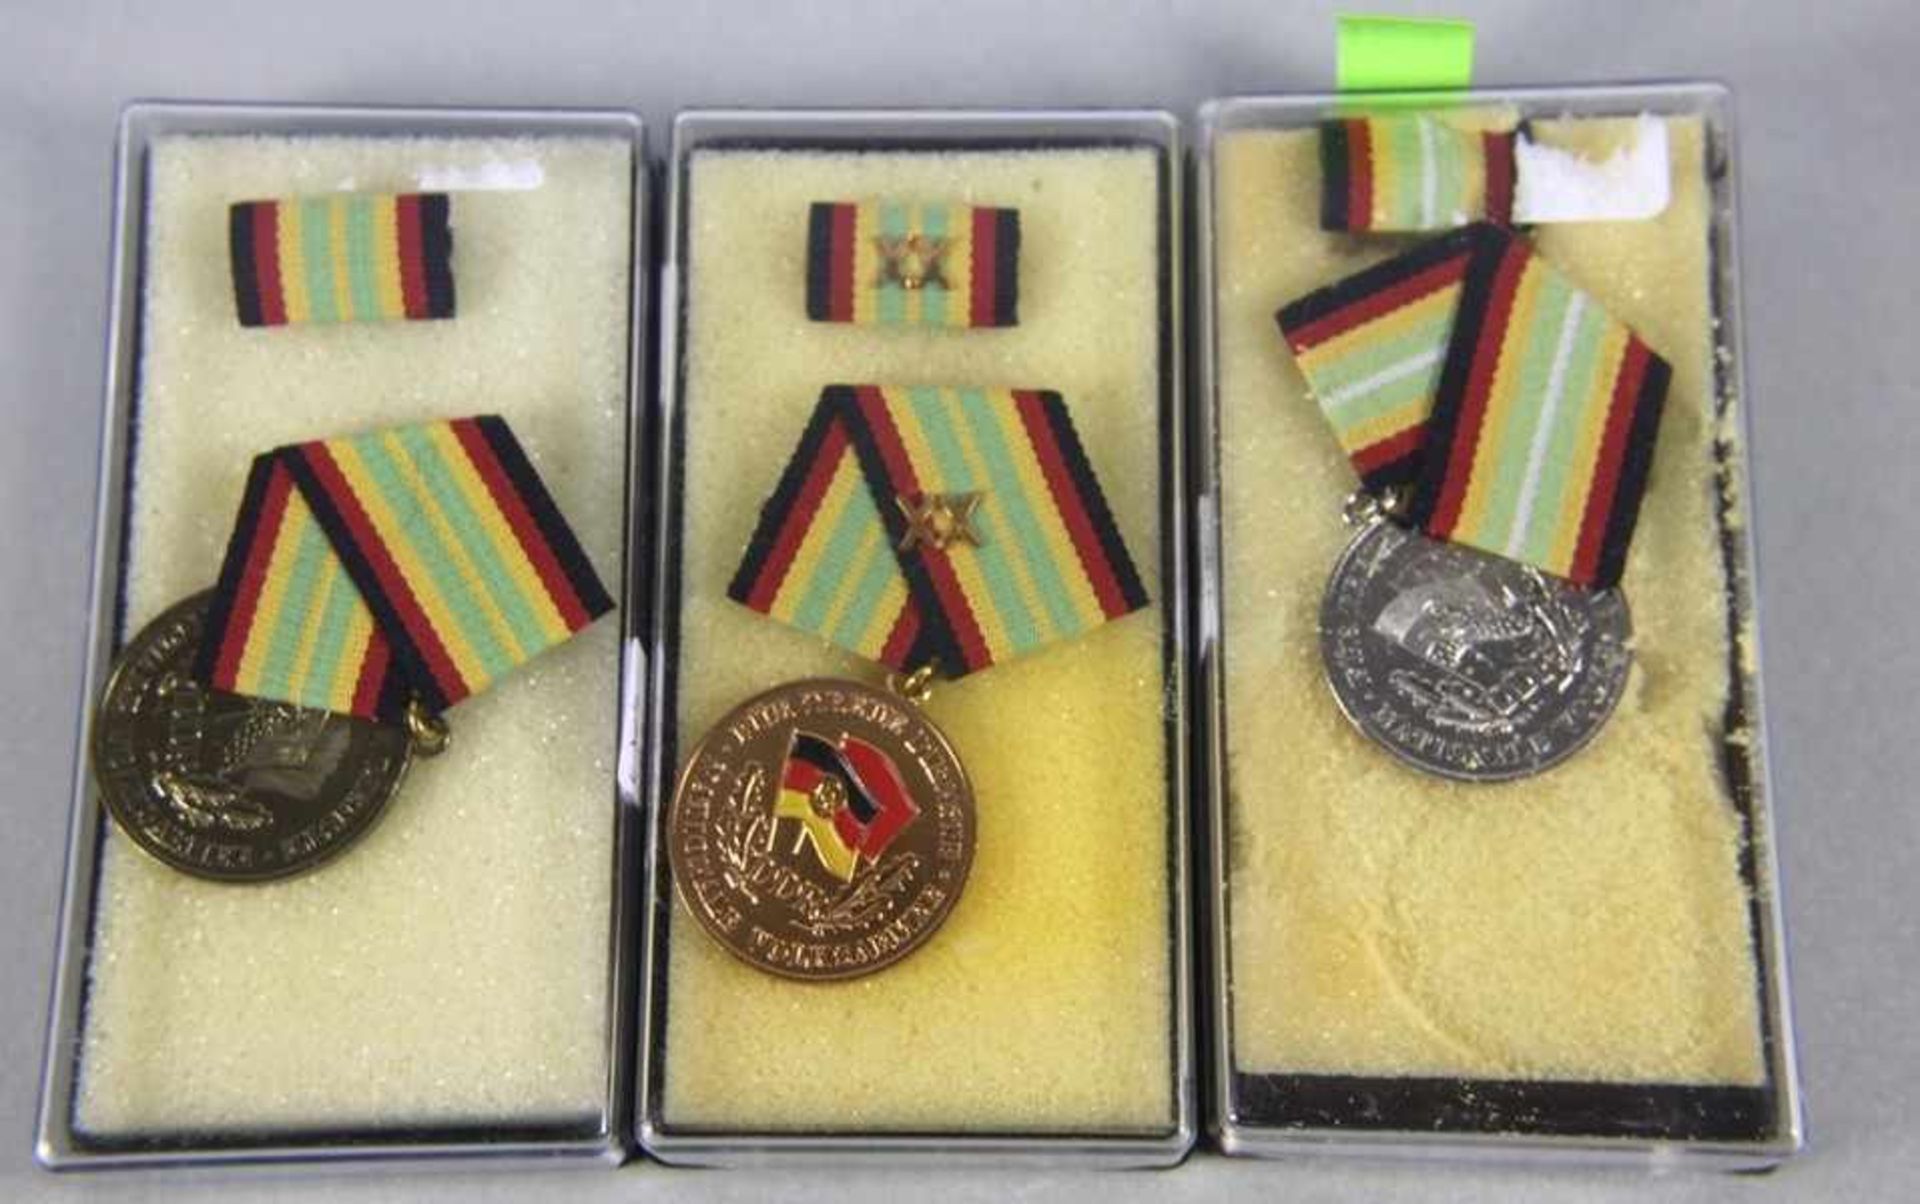 Konvolut NVA-Medaillenoriginal aus NVA-Beständen, 3 Stk. emaillierte Medaillen, Goldene Medaille für